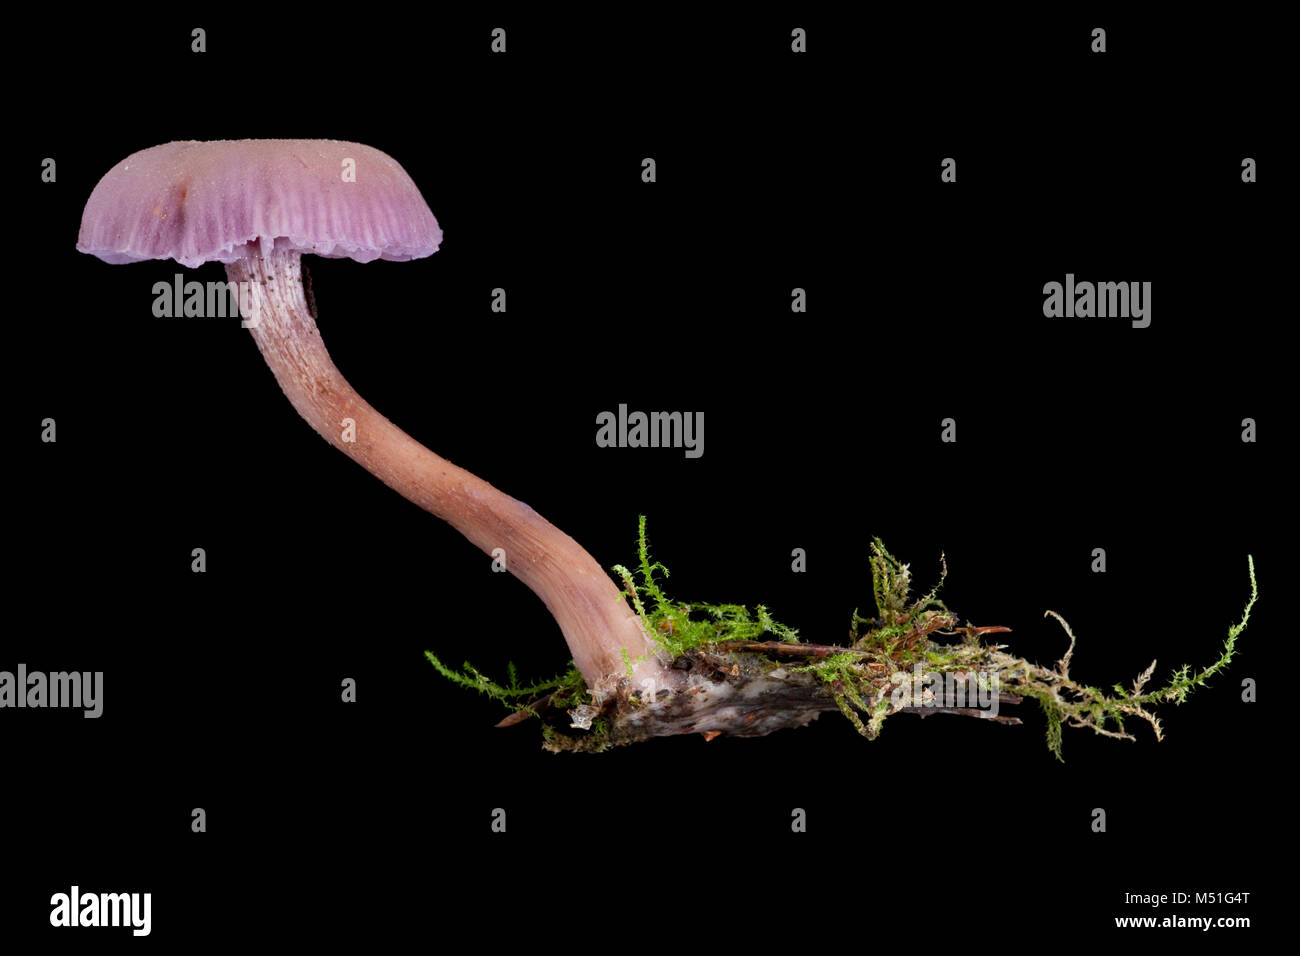 Studio Bild von Amethyst Betrüger Pilz, Laccaria amethystina. Dorset England UK GB auf schwarzem Hintergrund Stockfoto